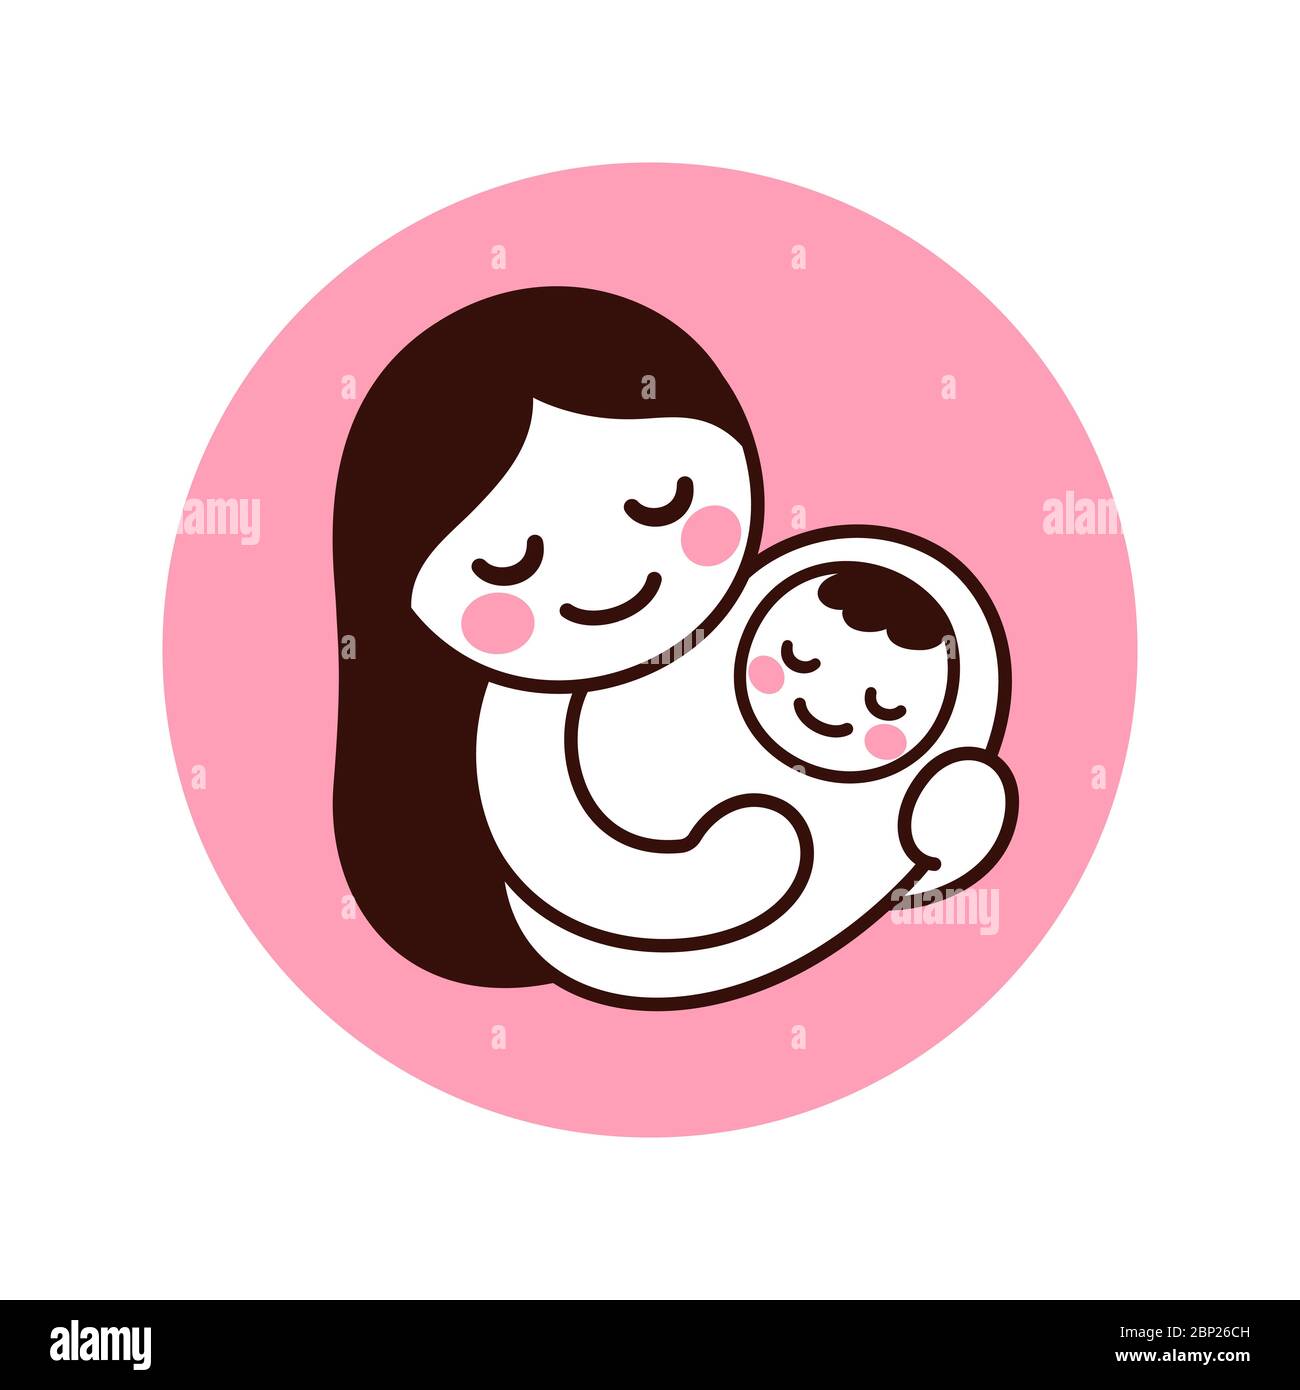 Niedliche und einfache Zeichnung von Mutter Baby halten. Handgezeichnetes Kritzel von Frau mit neugeborenem Kind. Isolierte Vektorgrafik Illustration. Stock Vektor